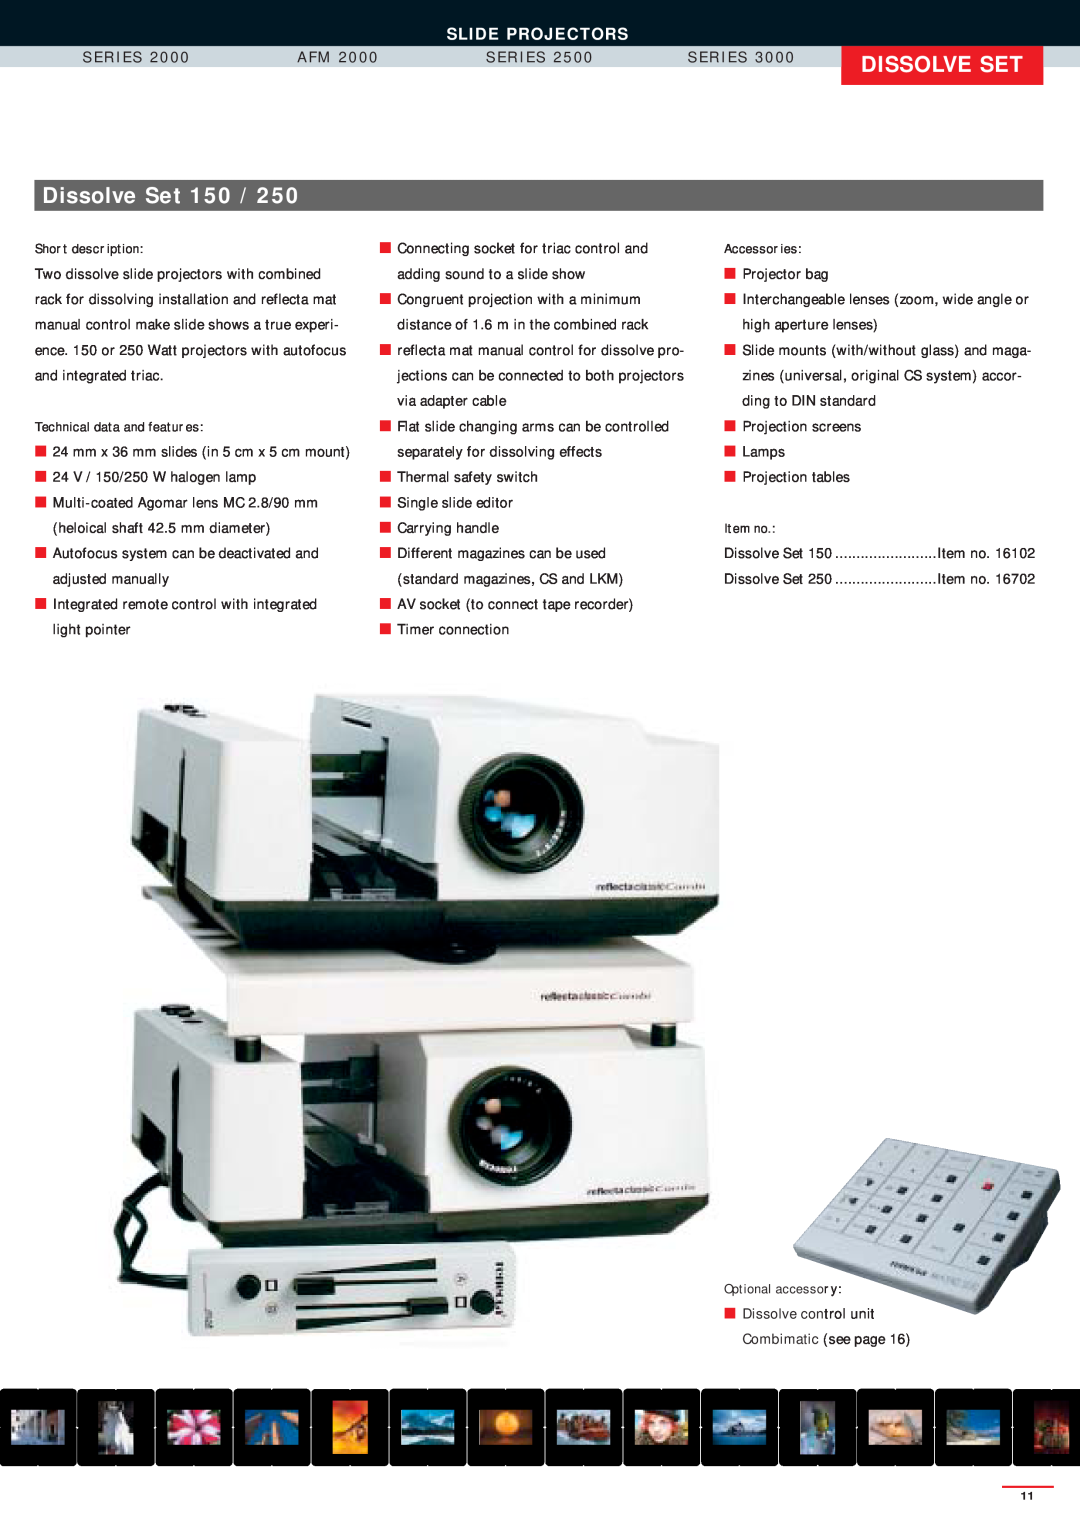 Reflecta SERIES 2000, SERIES 3000, SERIES 2500AFM manual Dissolve Set, Slide Projectors, S E R I E S 2 0 0, A F M 2 0 0 